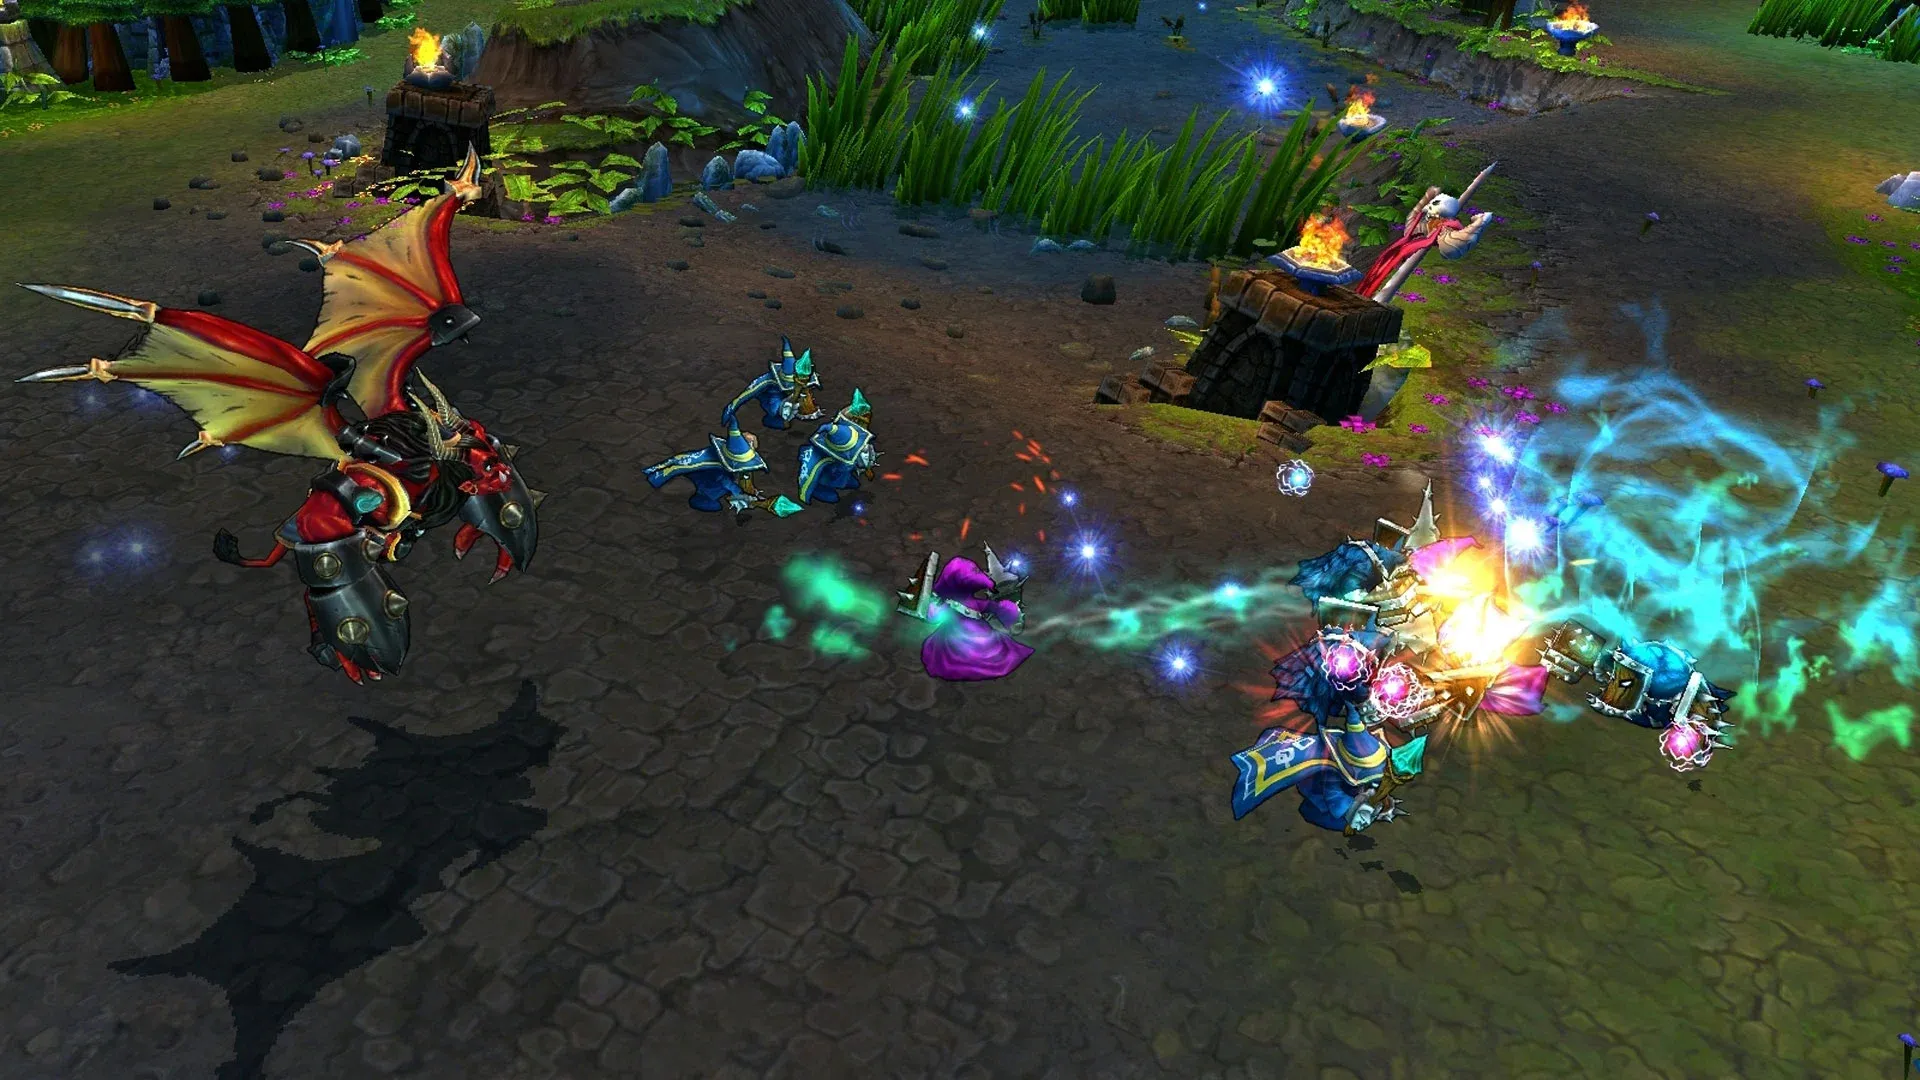 Imagem do jogo League of Legends, na qual o campeão Galio leva um pequeno exército pela floresta e enfrenta unidades inimigas